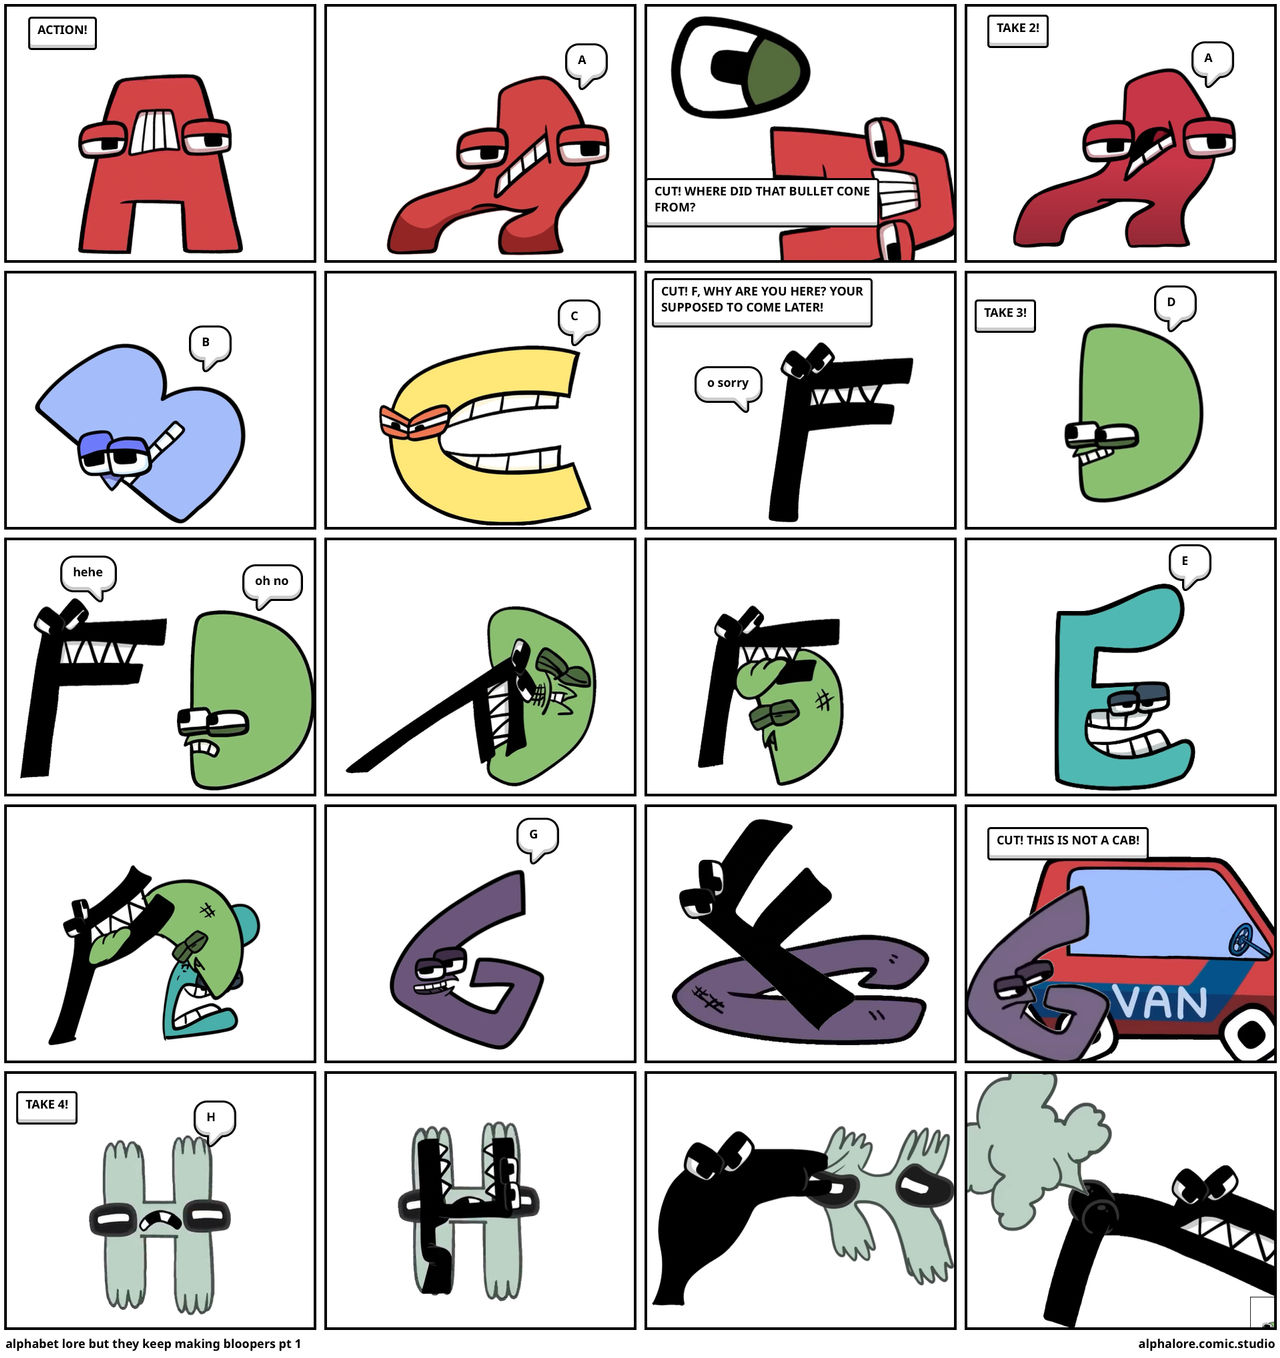 Russian Alphabet Lore But Cursed In Alphabet Lore Comic Studio 